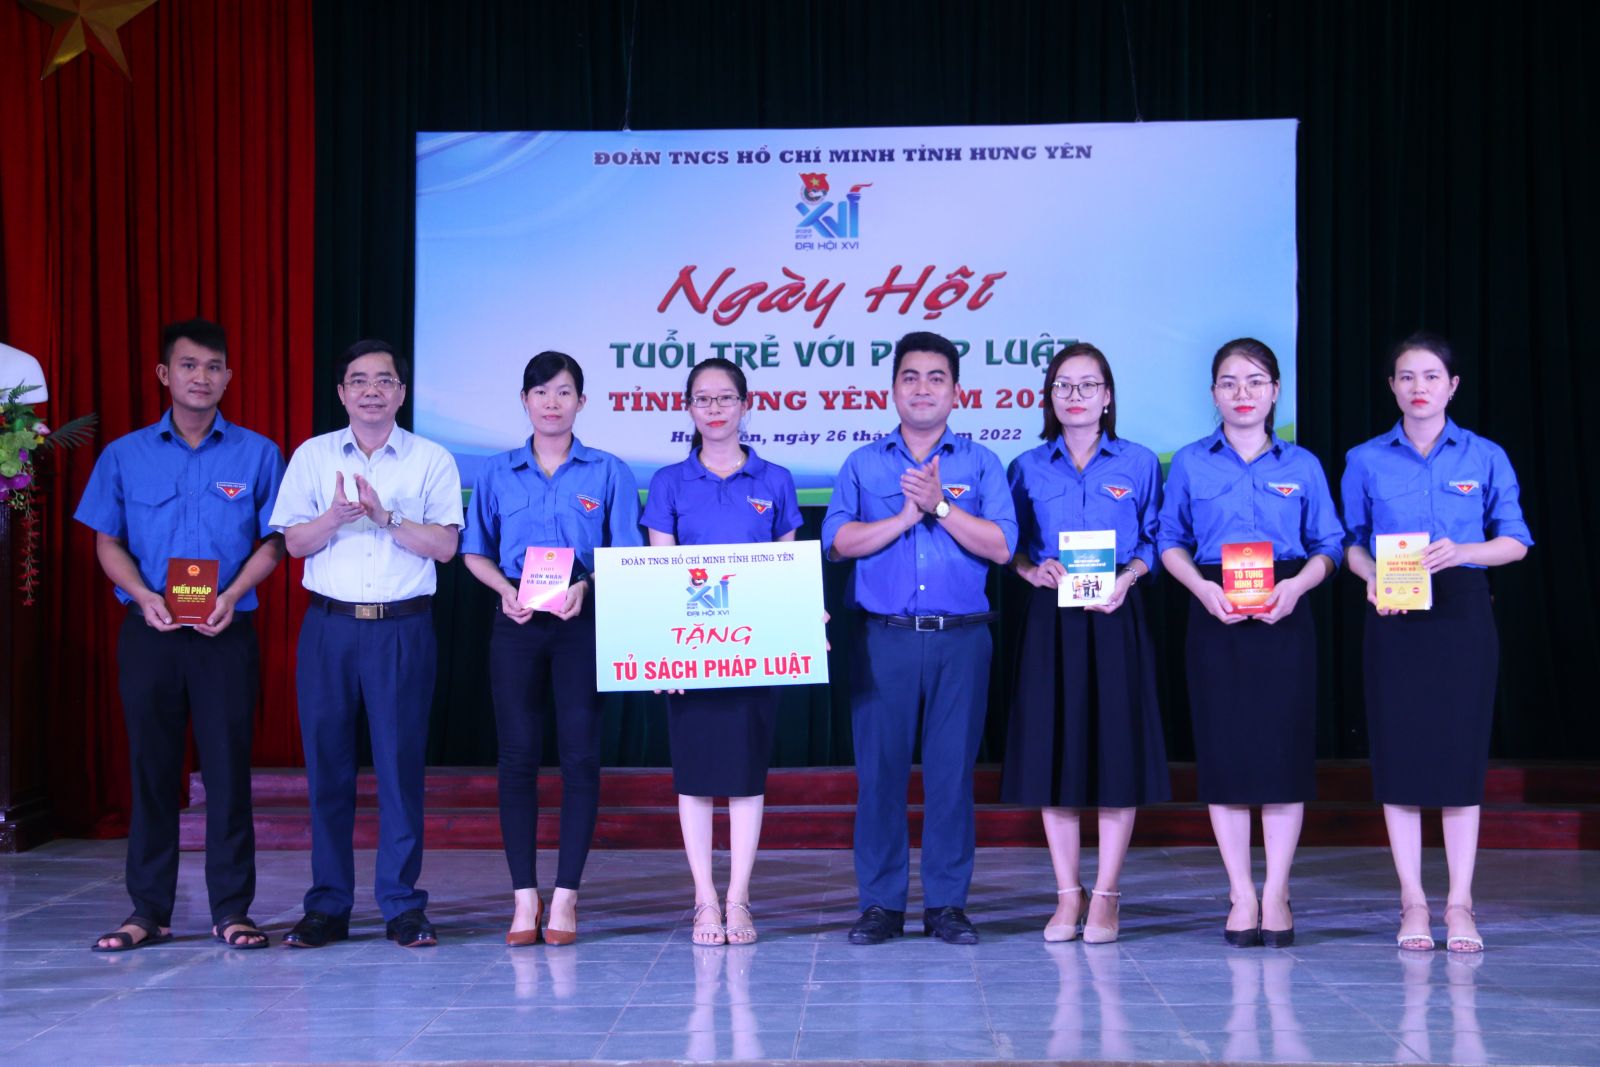 Tỉnh đoàn Hưng Yên tổ chức Ngày hội “Tuổi trẻ với pháp luật” năm 2022